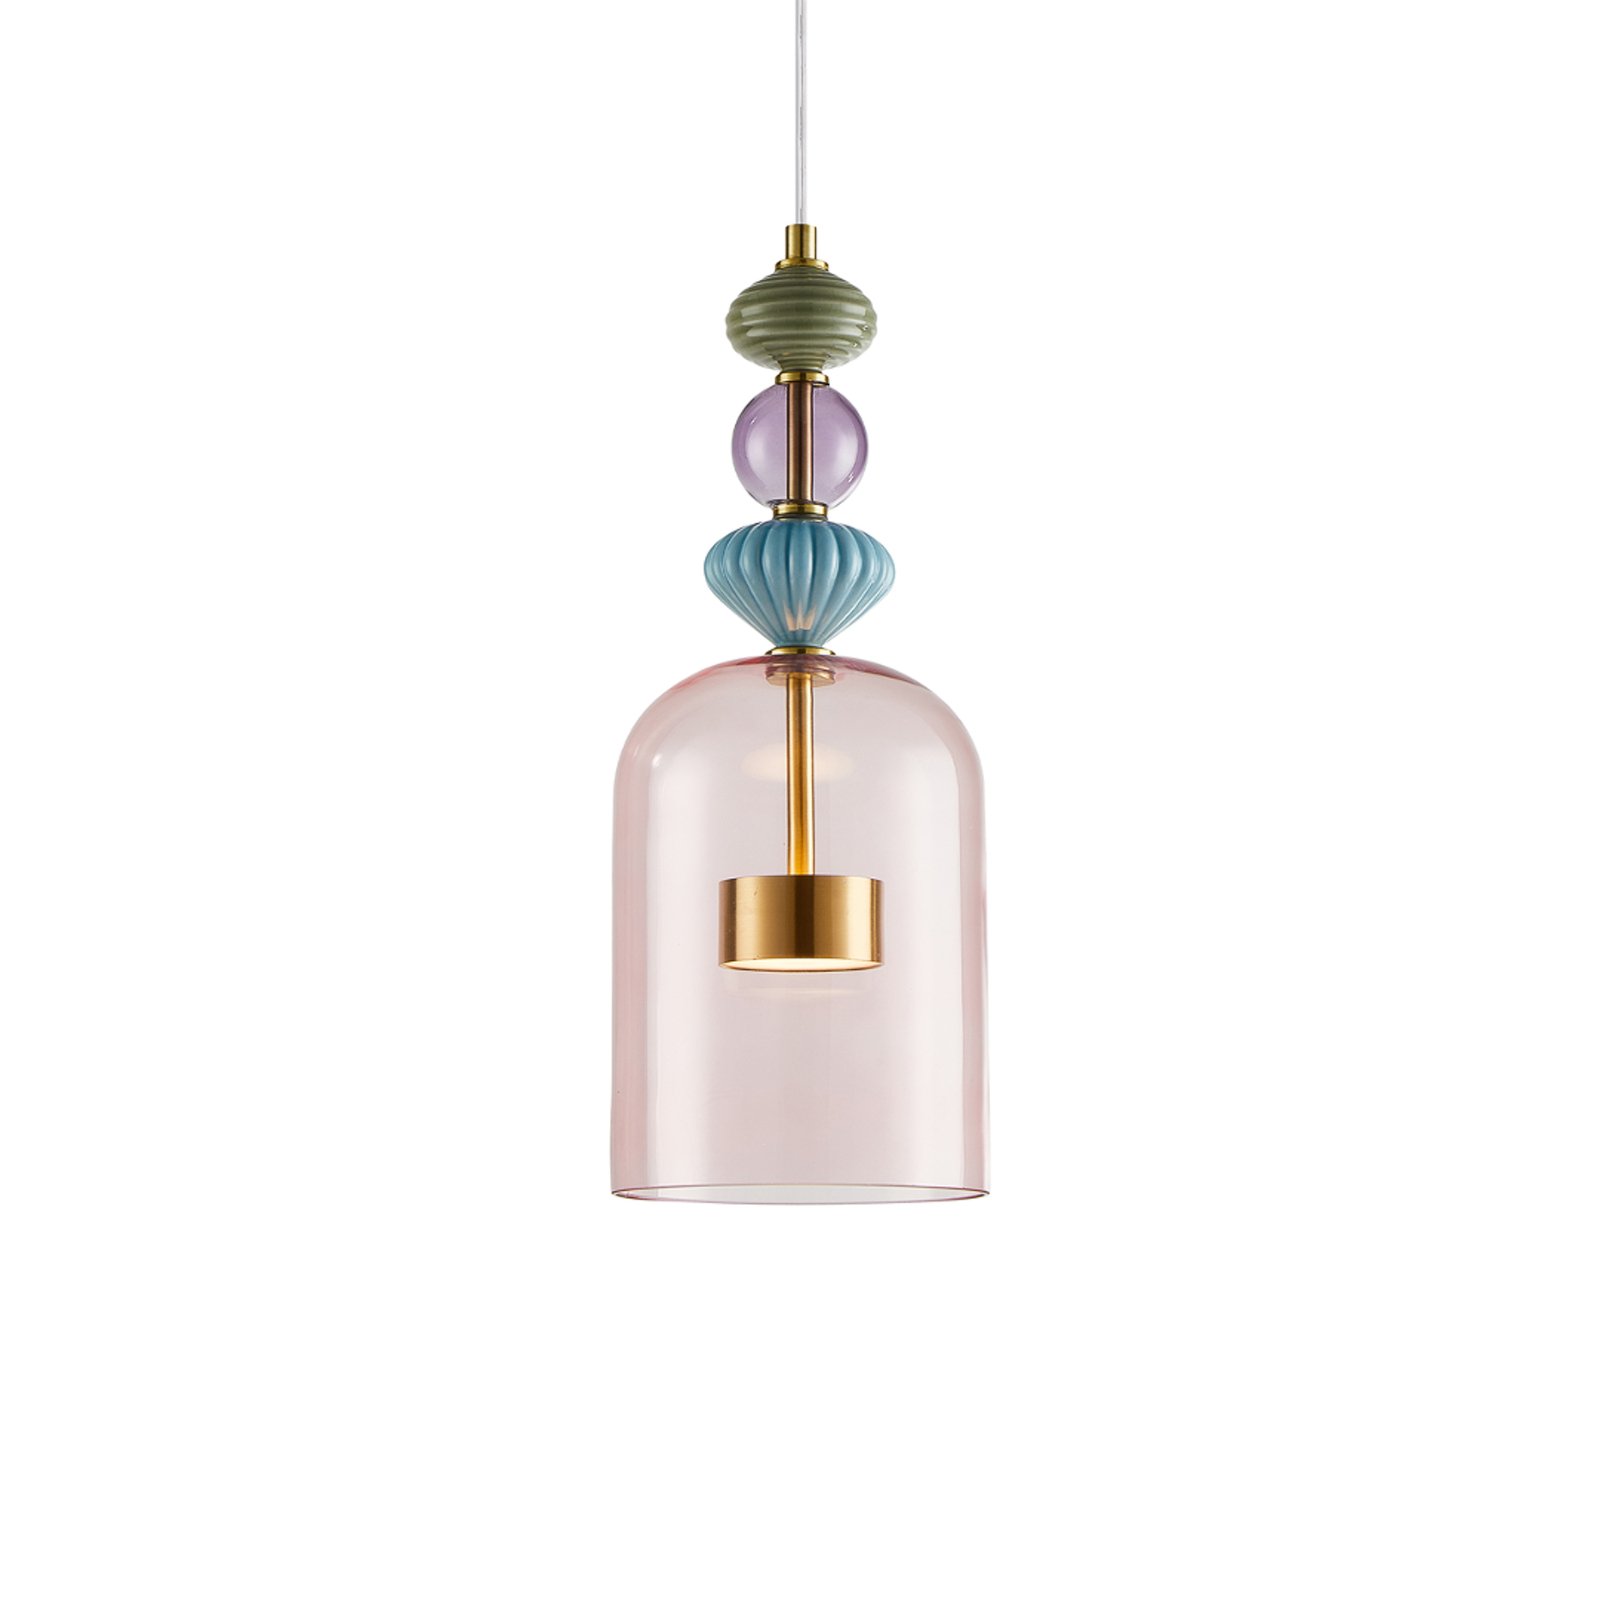 Arte LED-es függőlámpa, üveg lámpabúra, rózsaszín, Ø 16 cm, 12 W